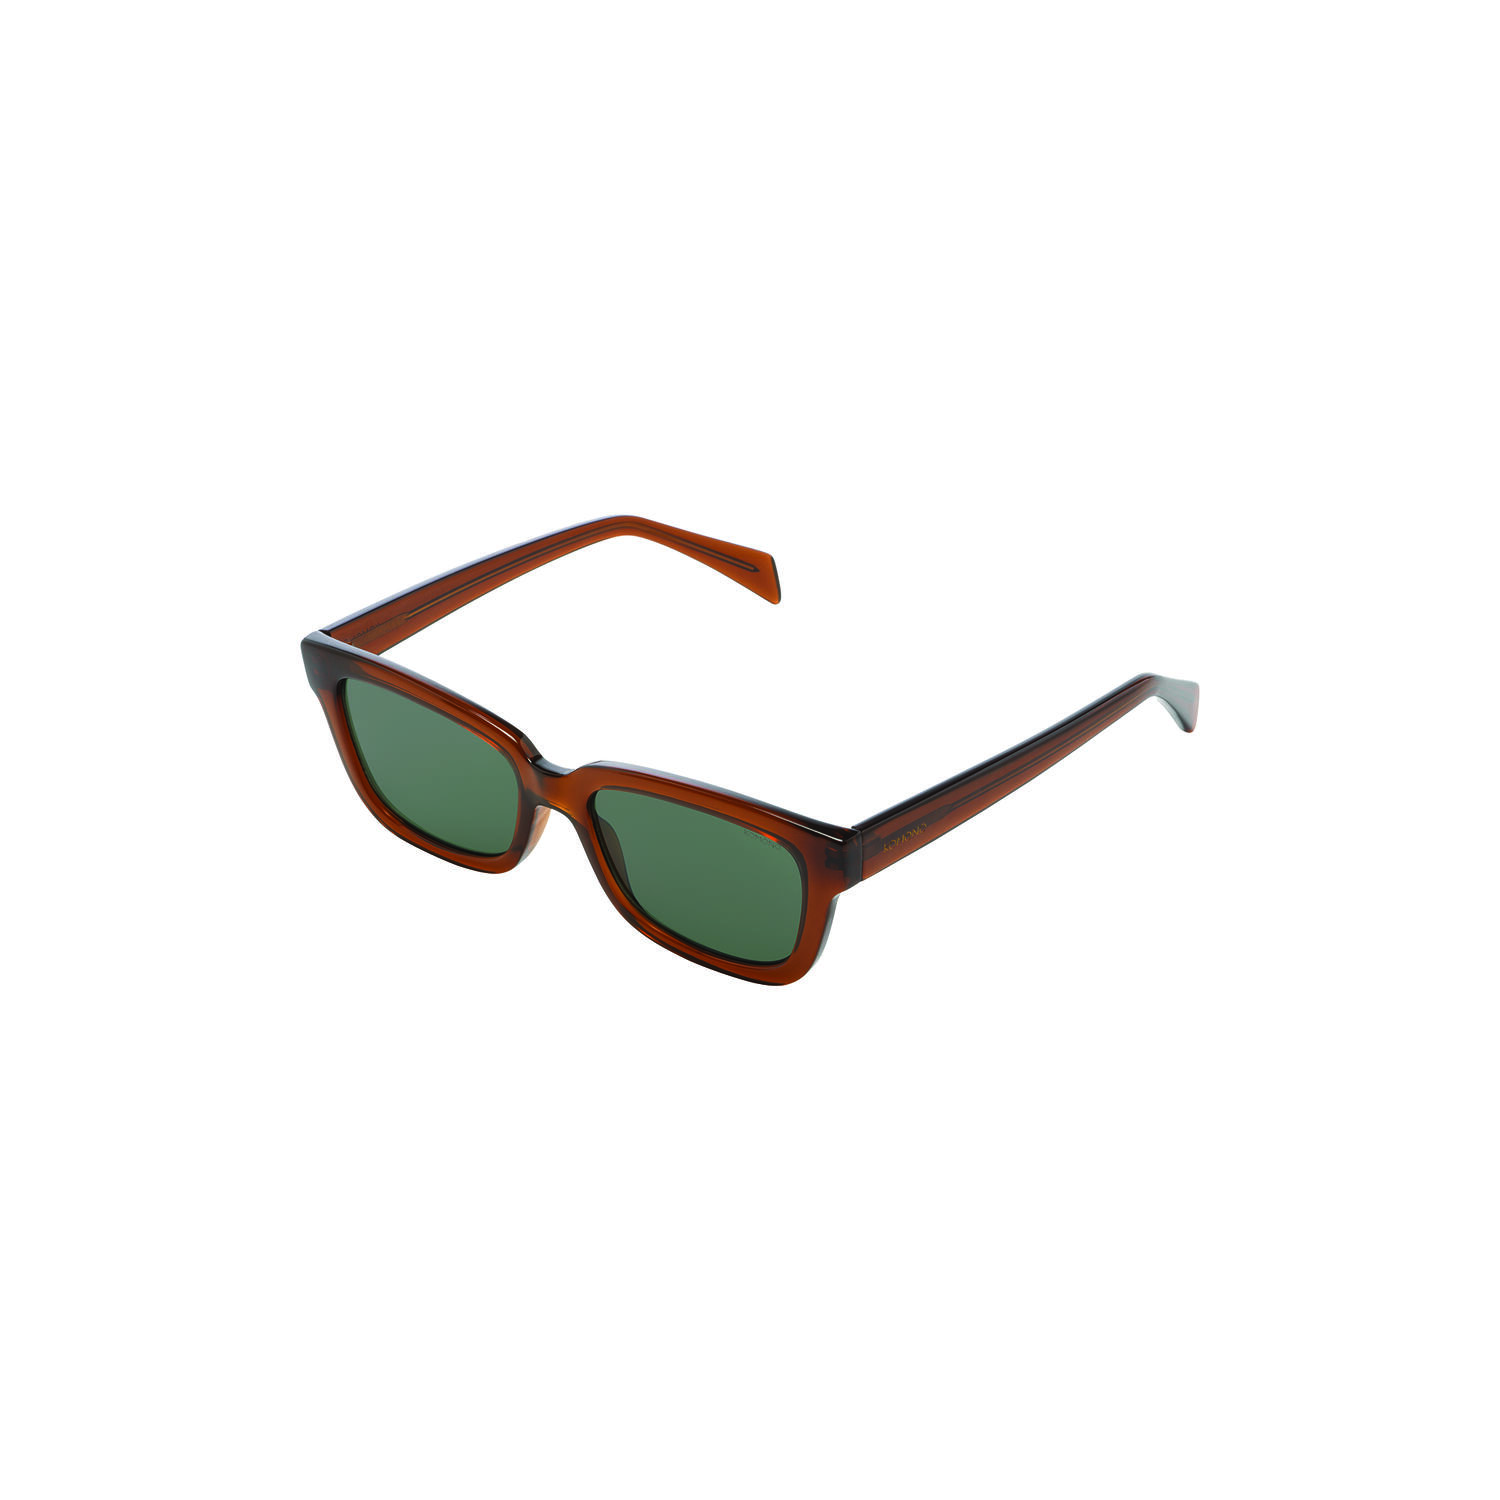 Kjøp Rocco solbrille, fra Komono